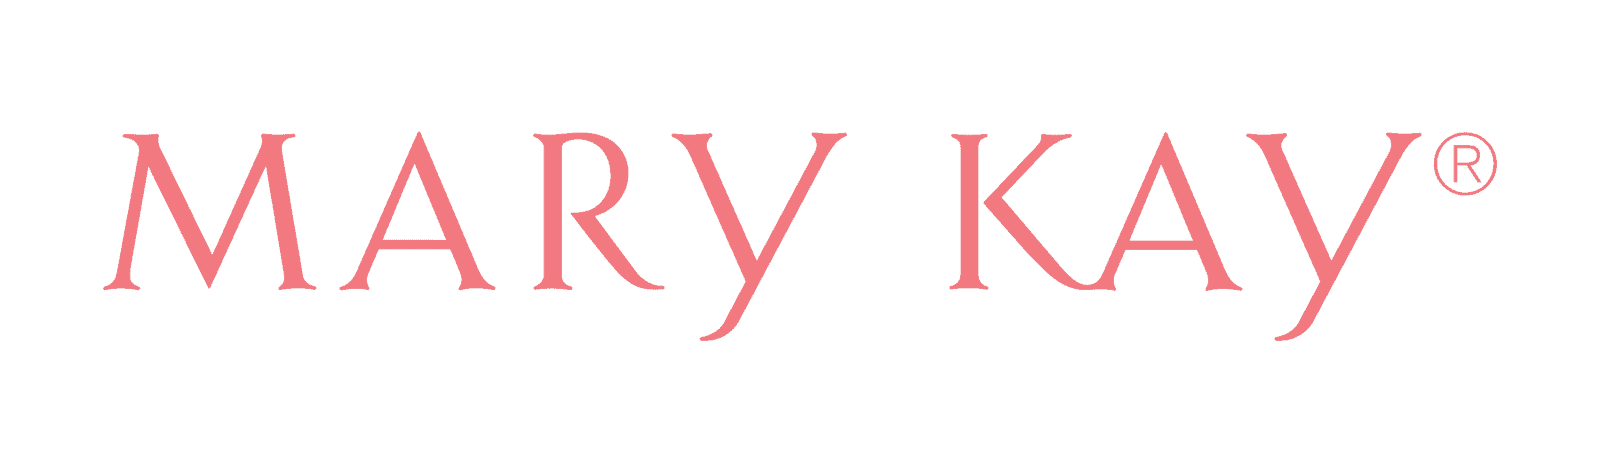 mary-kay-logo.